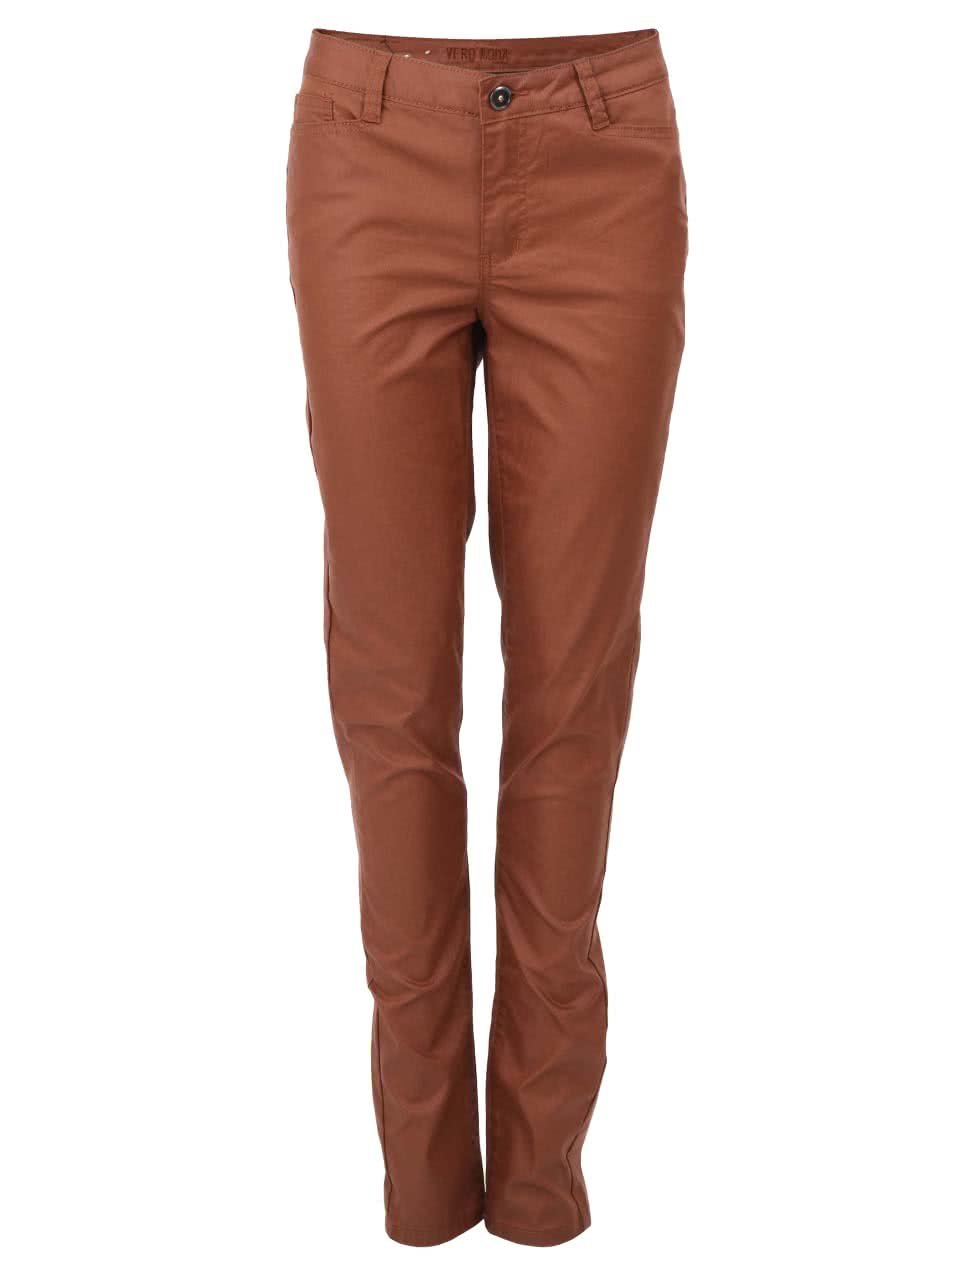 Hnědé kalhoty s koženkovým efektem Vero Moda Wonder